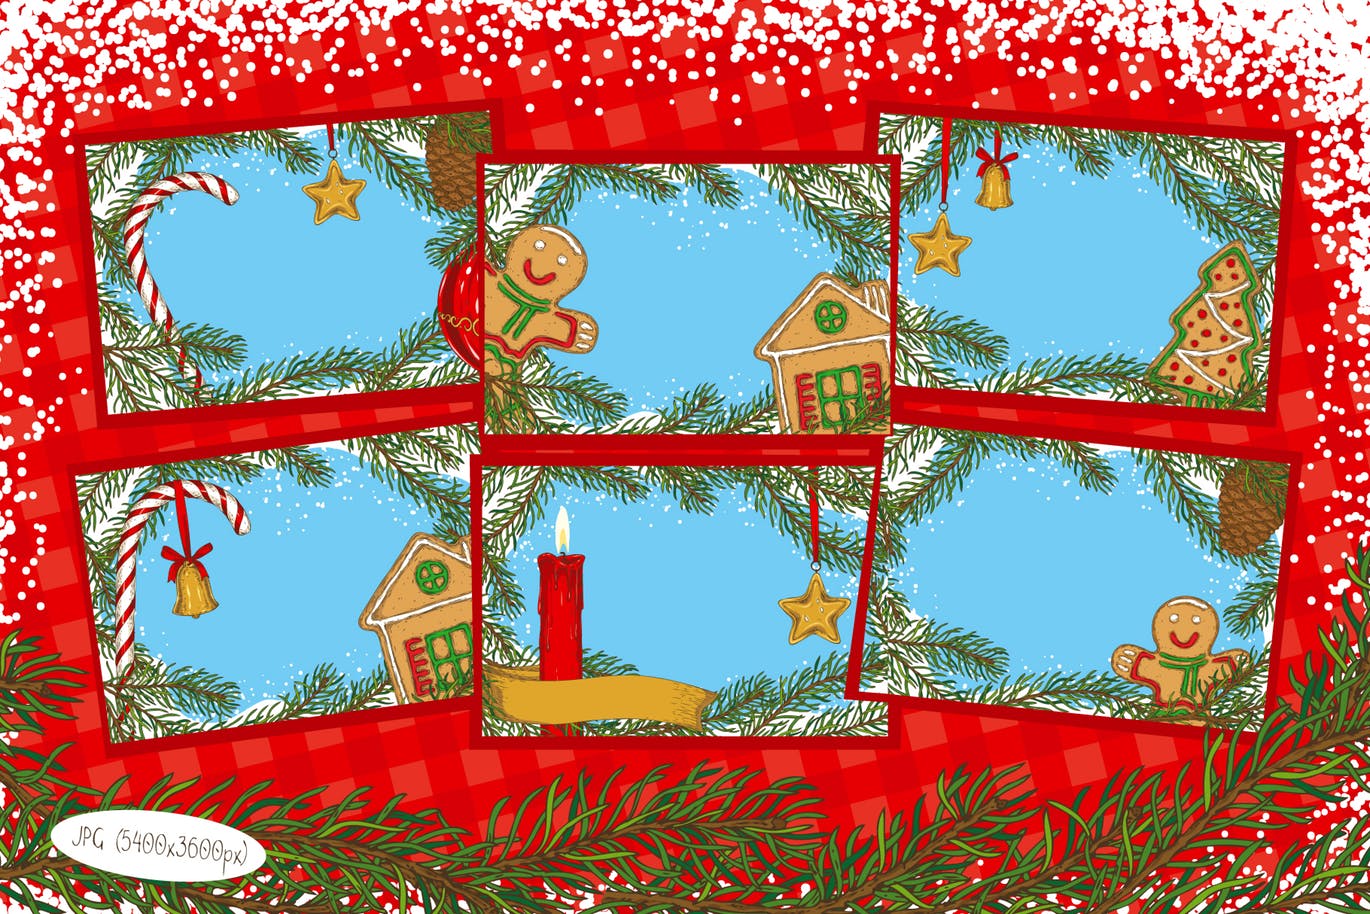 创意圣诞节主题设计矢量图案素材包 Merry Christmas Design Set插图(7)